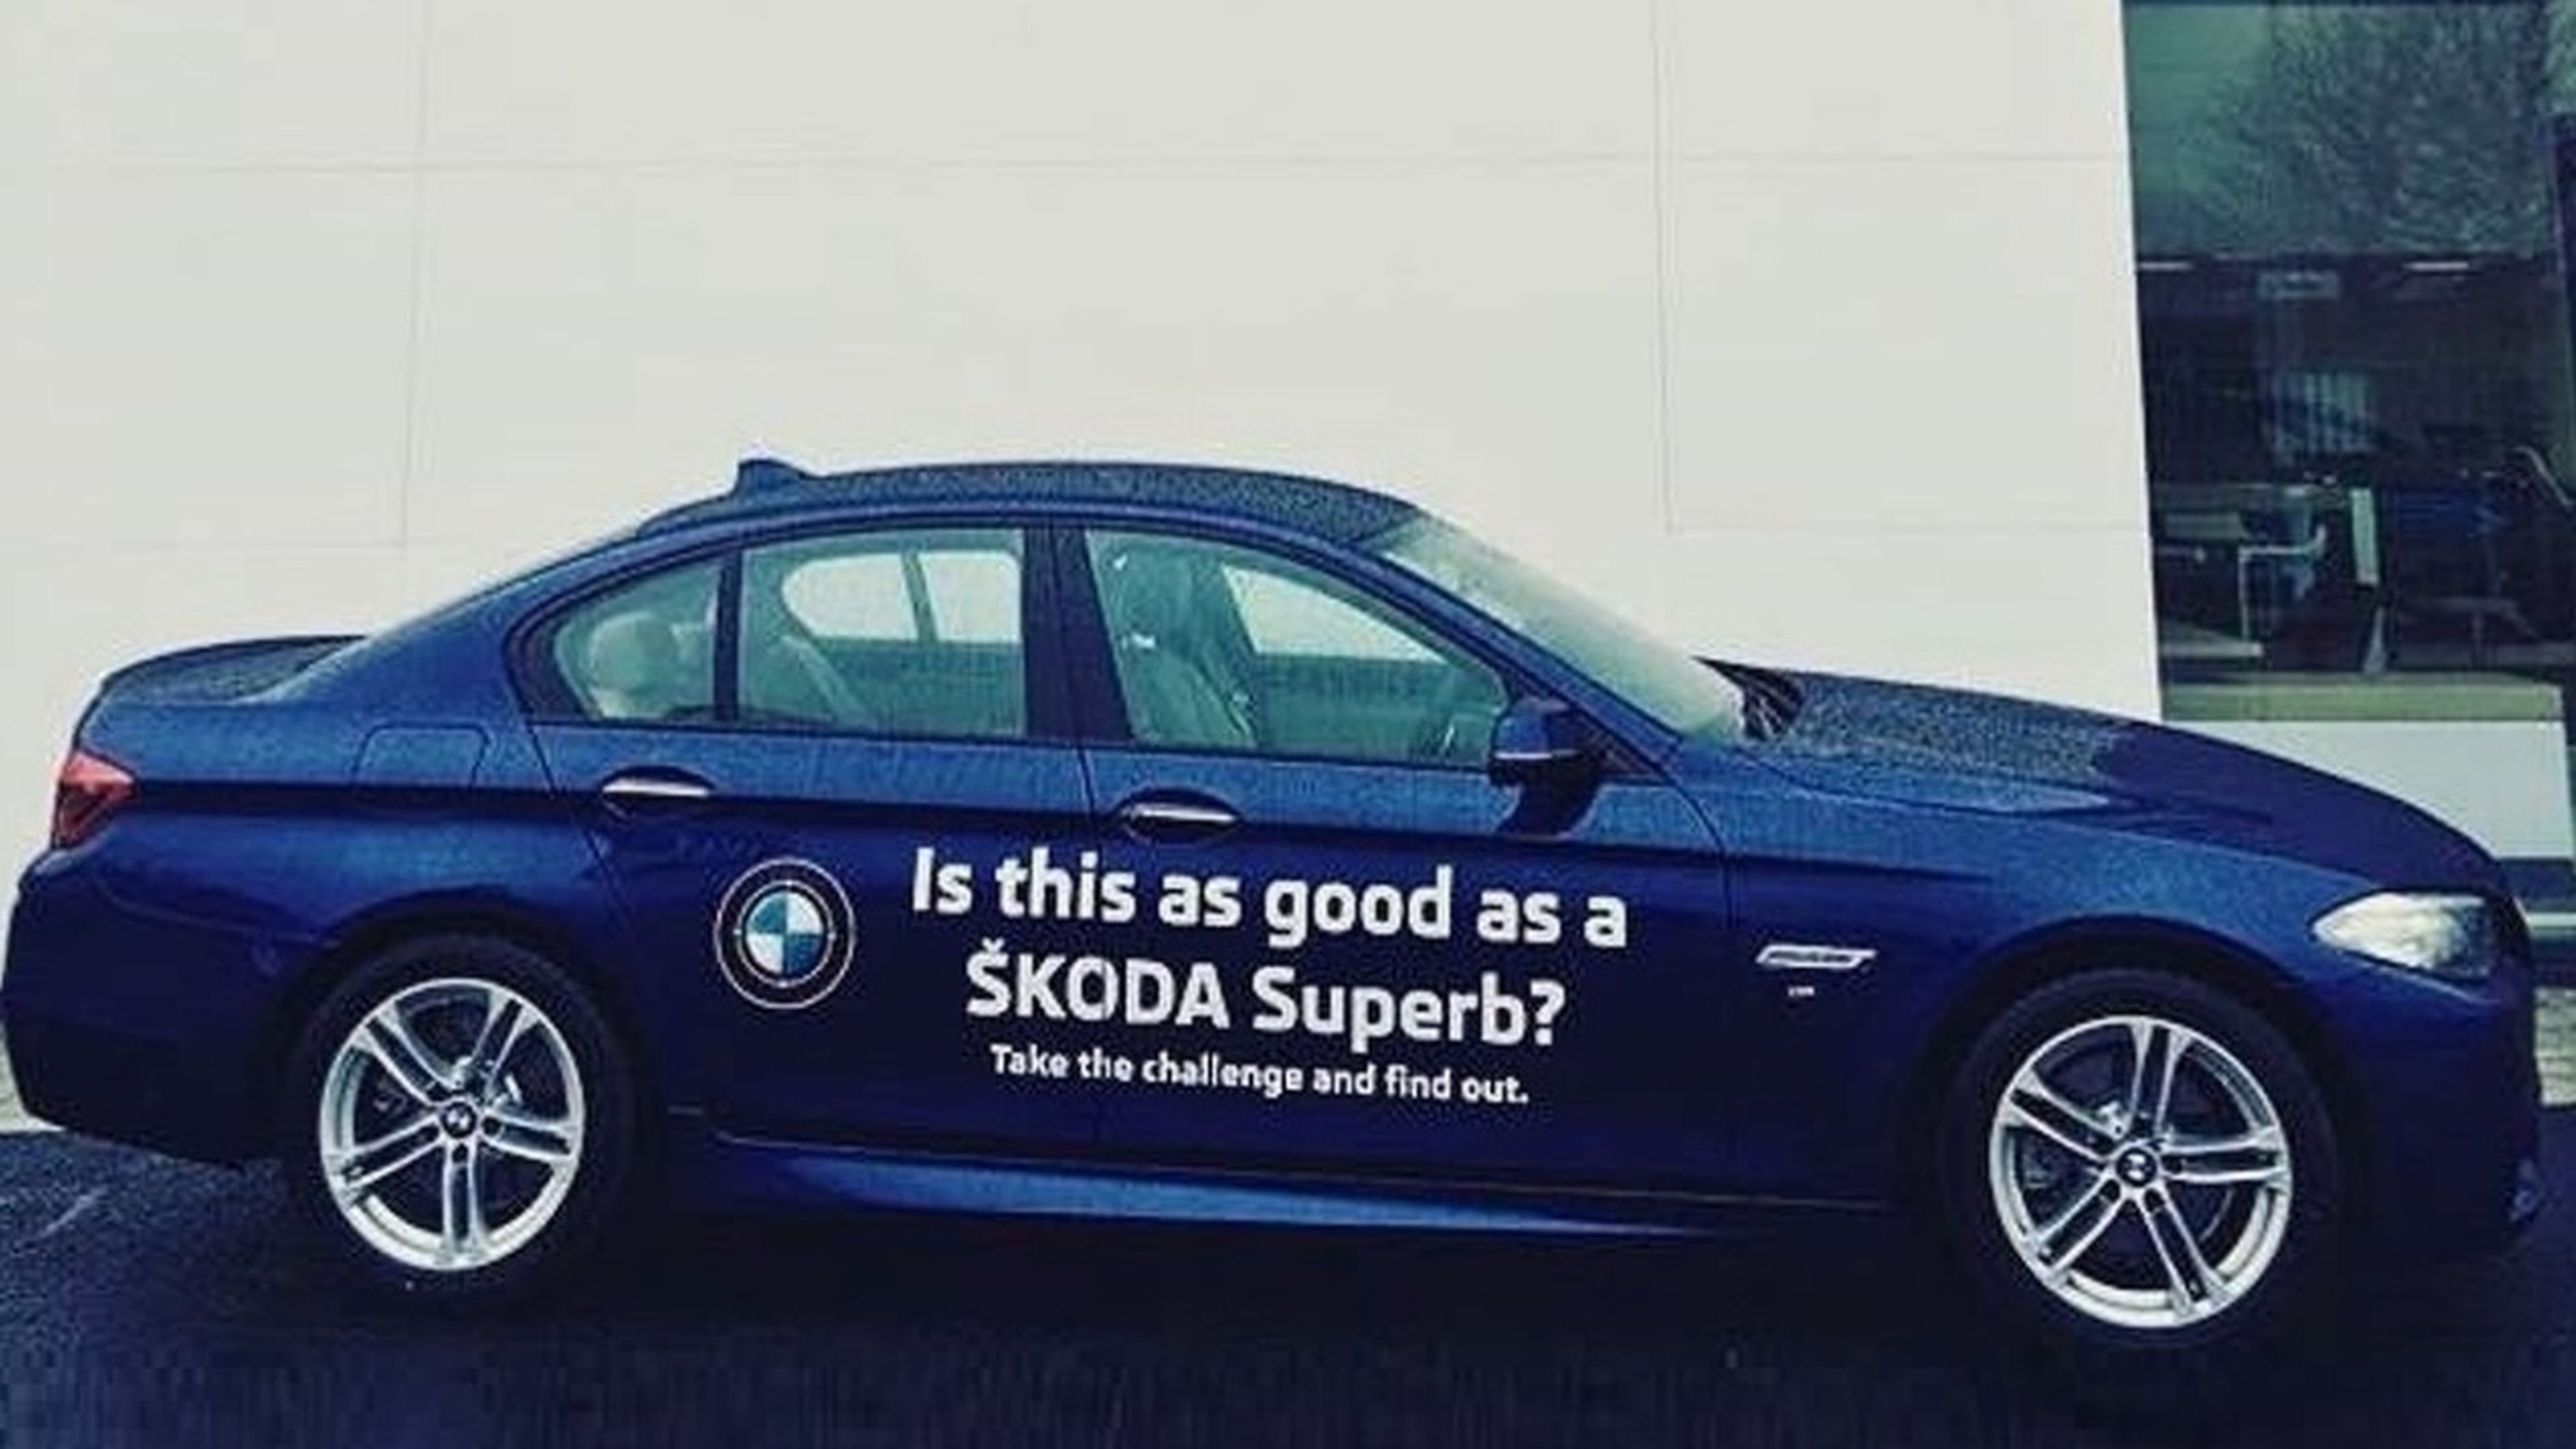 Concesionario Skoda deja conducir un BMW para comparar